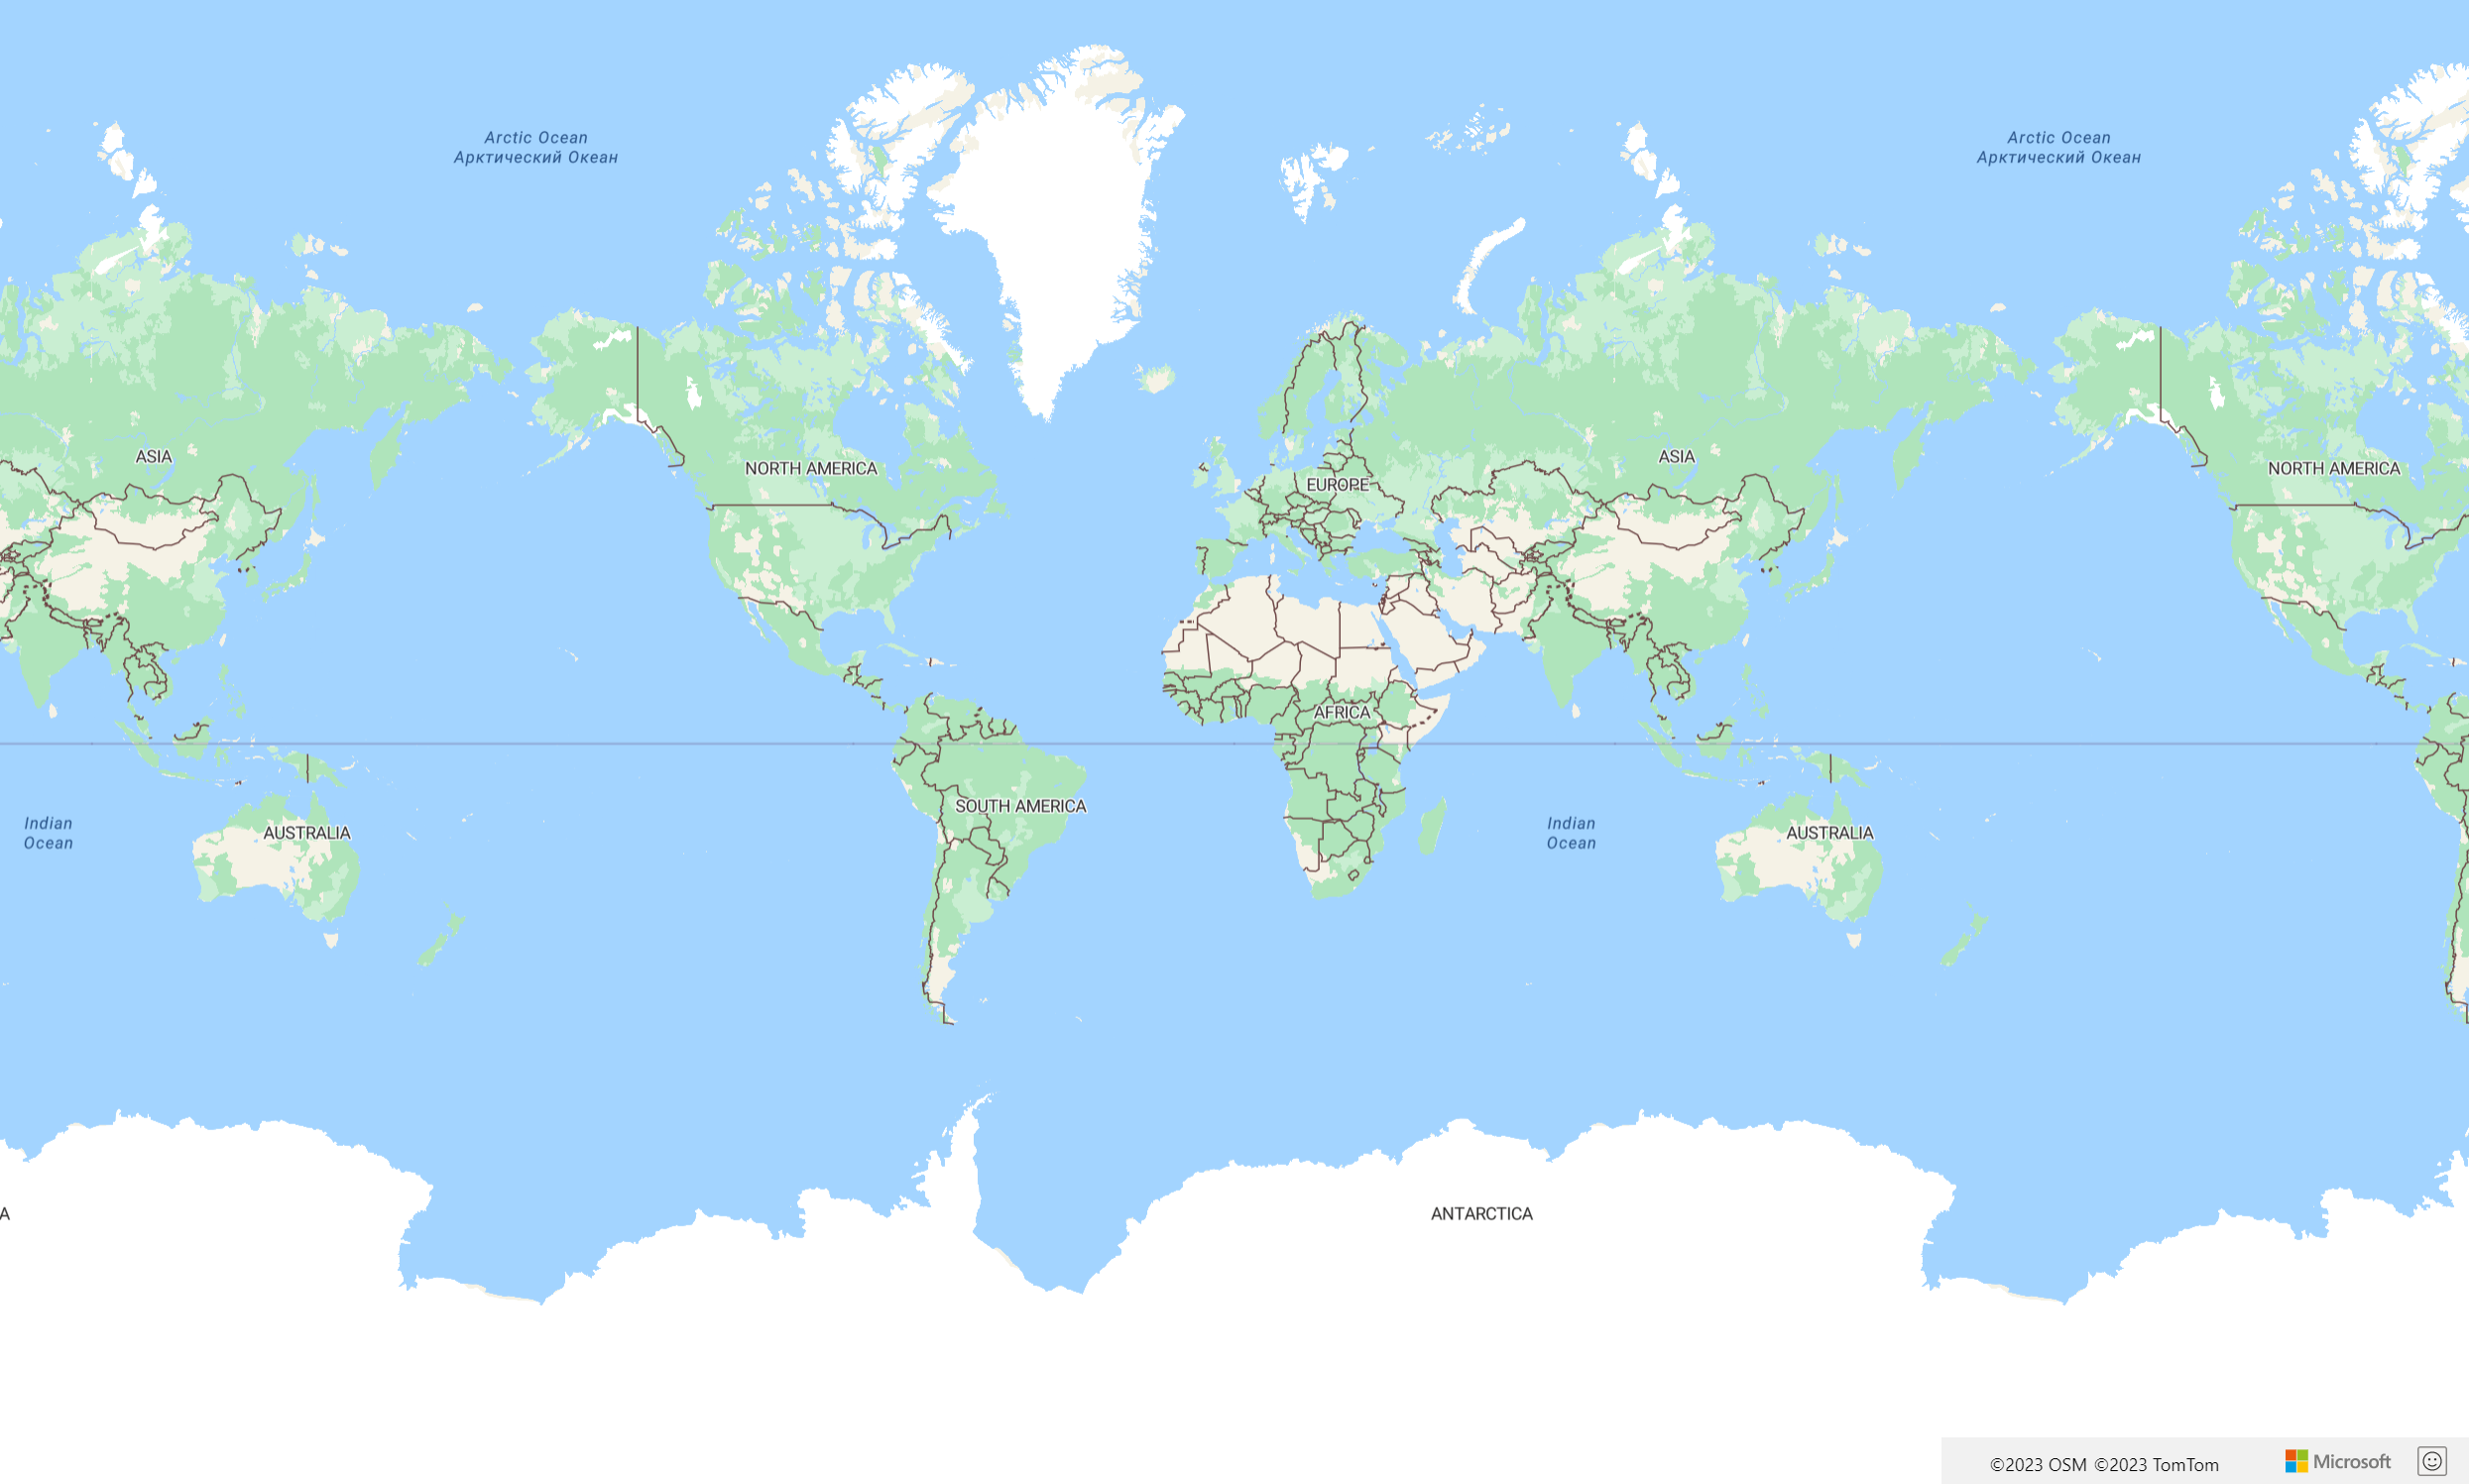 Снимок экрана, на котором показана самая базовая карта, которую можно сделать, вызвав API карты atlas с помощью ключа подписки azure Карты.